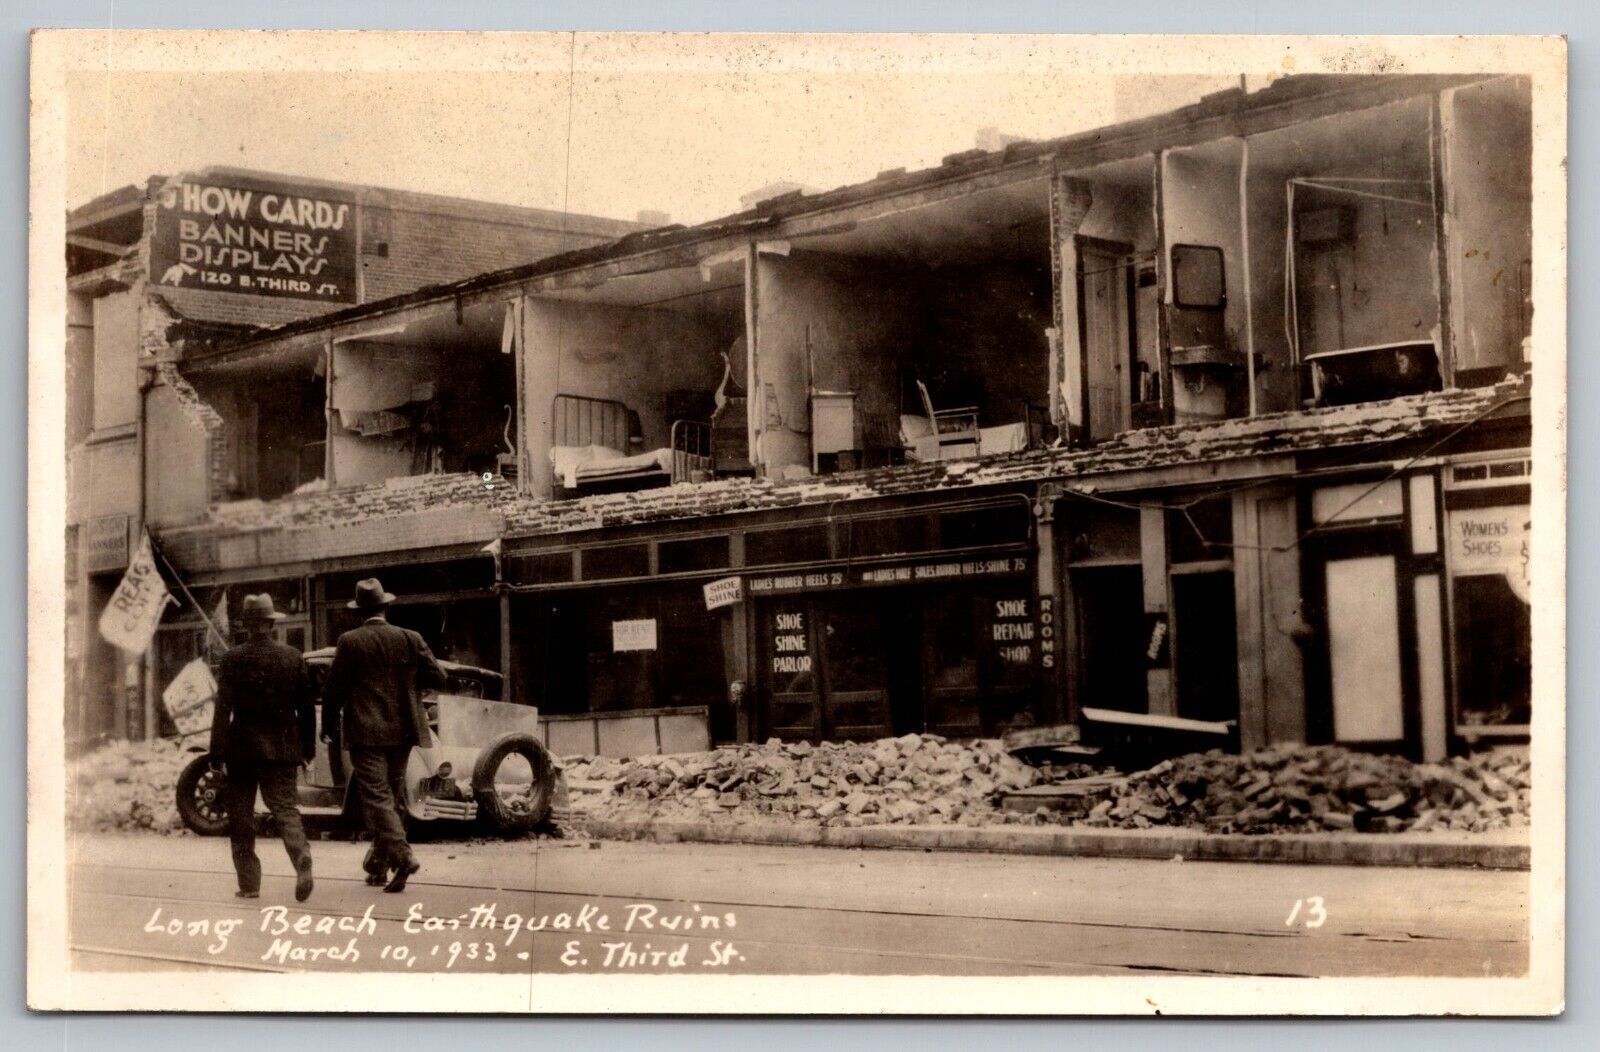 E. Third St. Long Beach Earthquake Ruins. California Real Photo Postcard RPPC